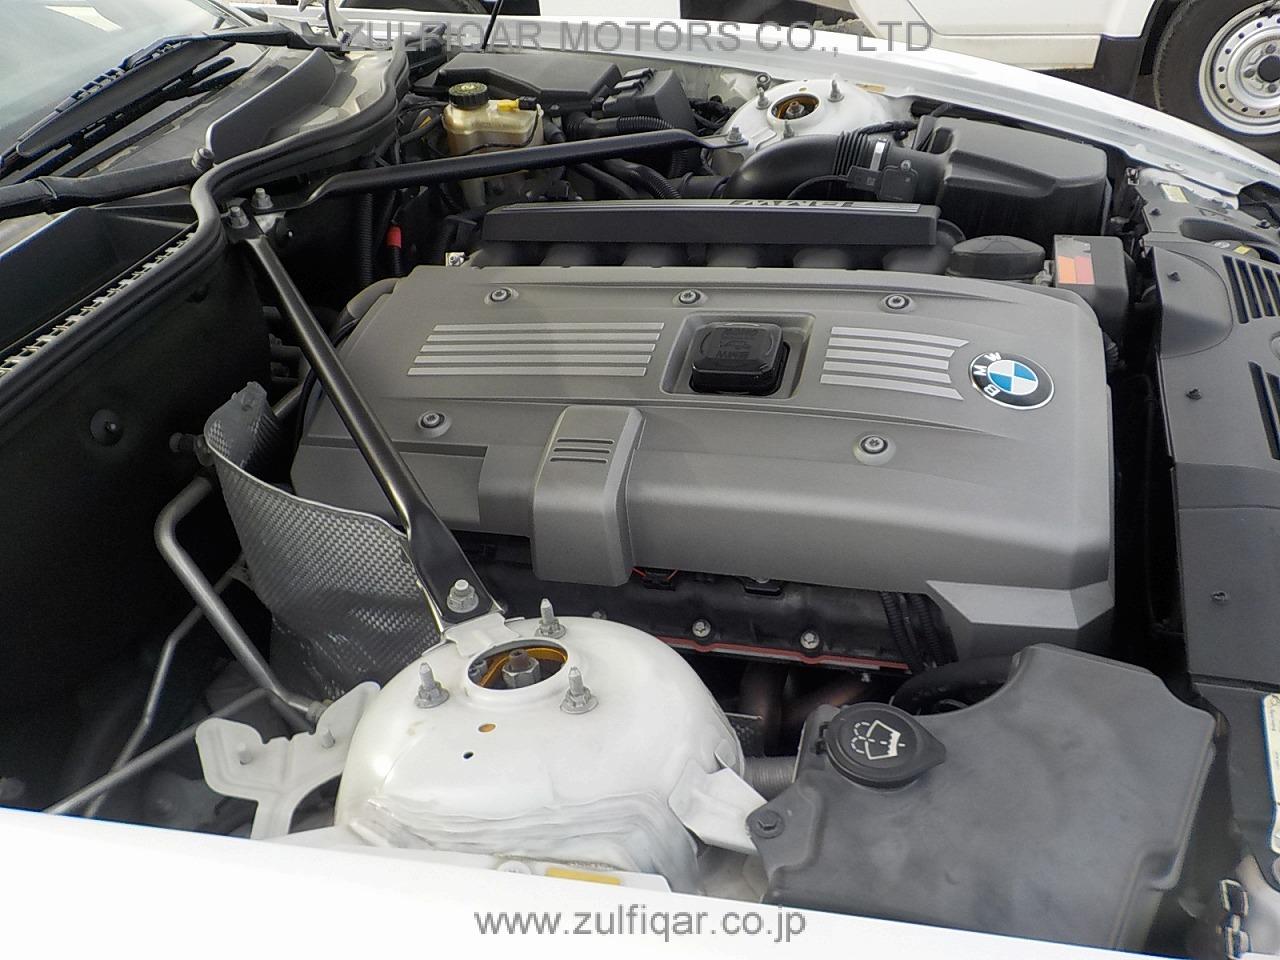 BMW Z4 2007 Image 31